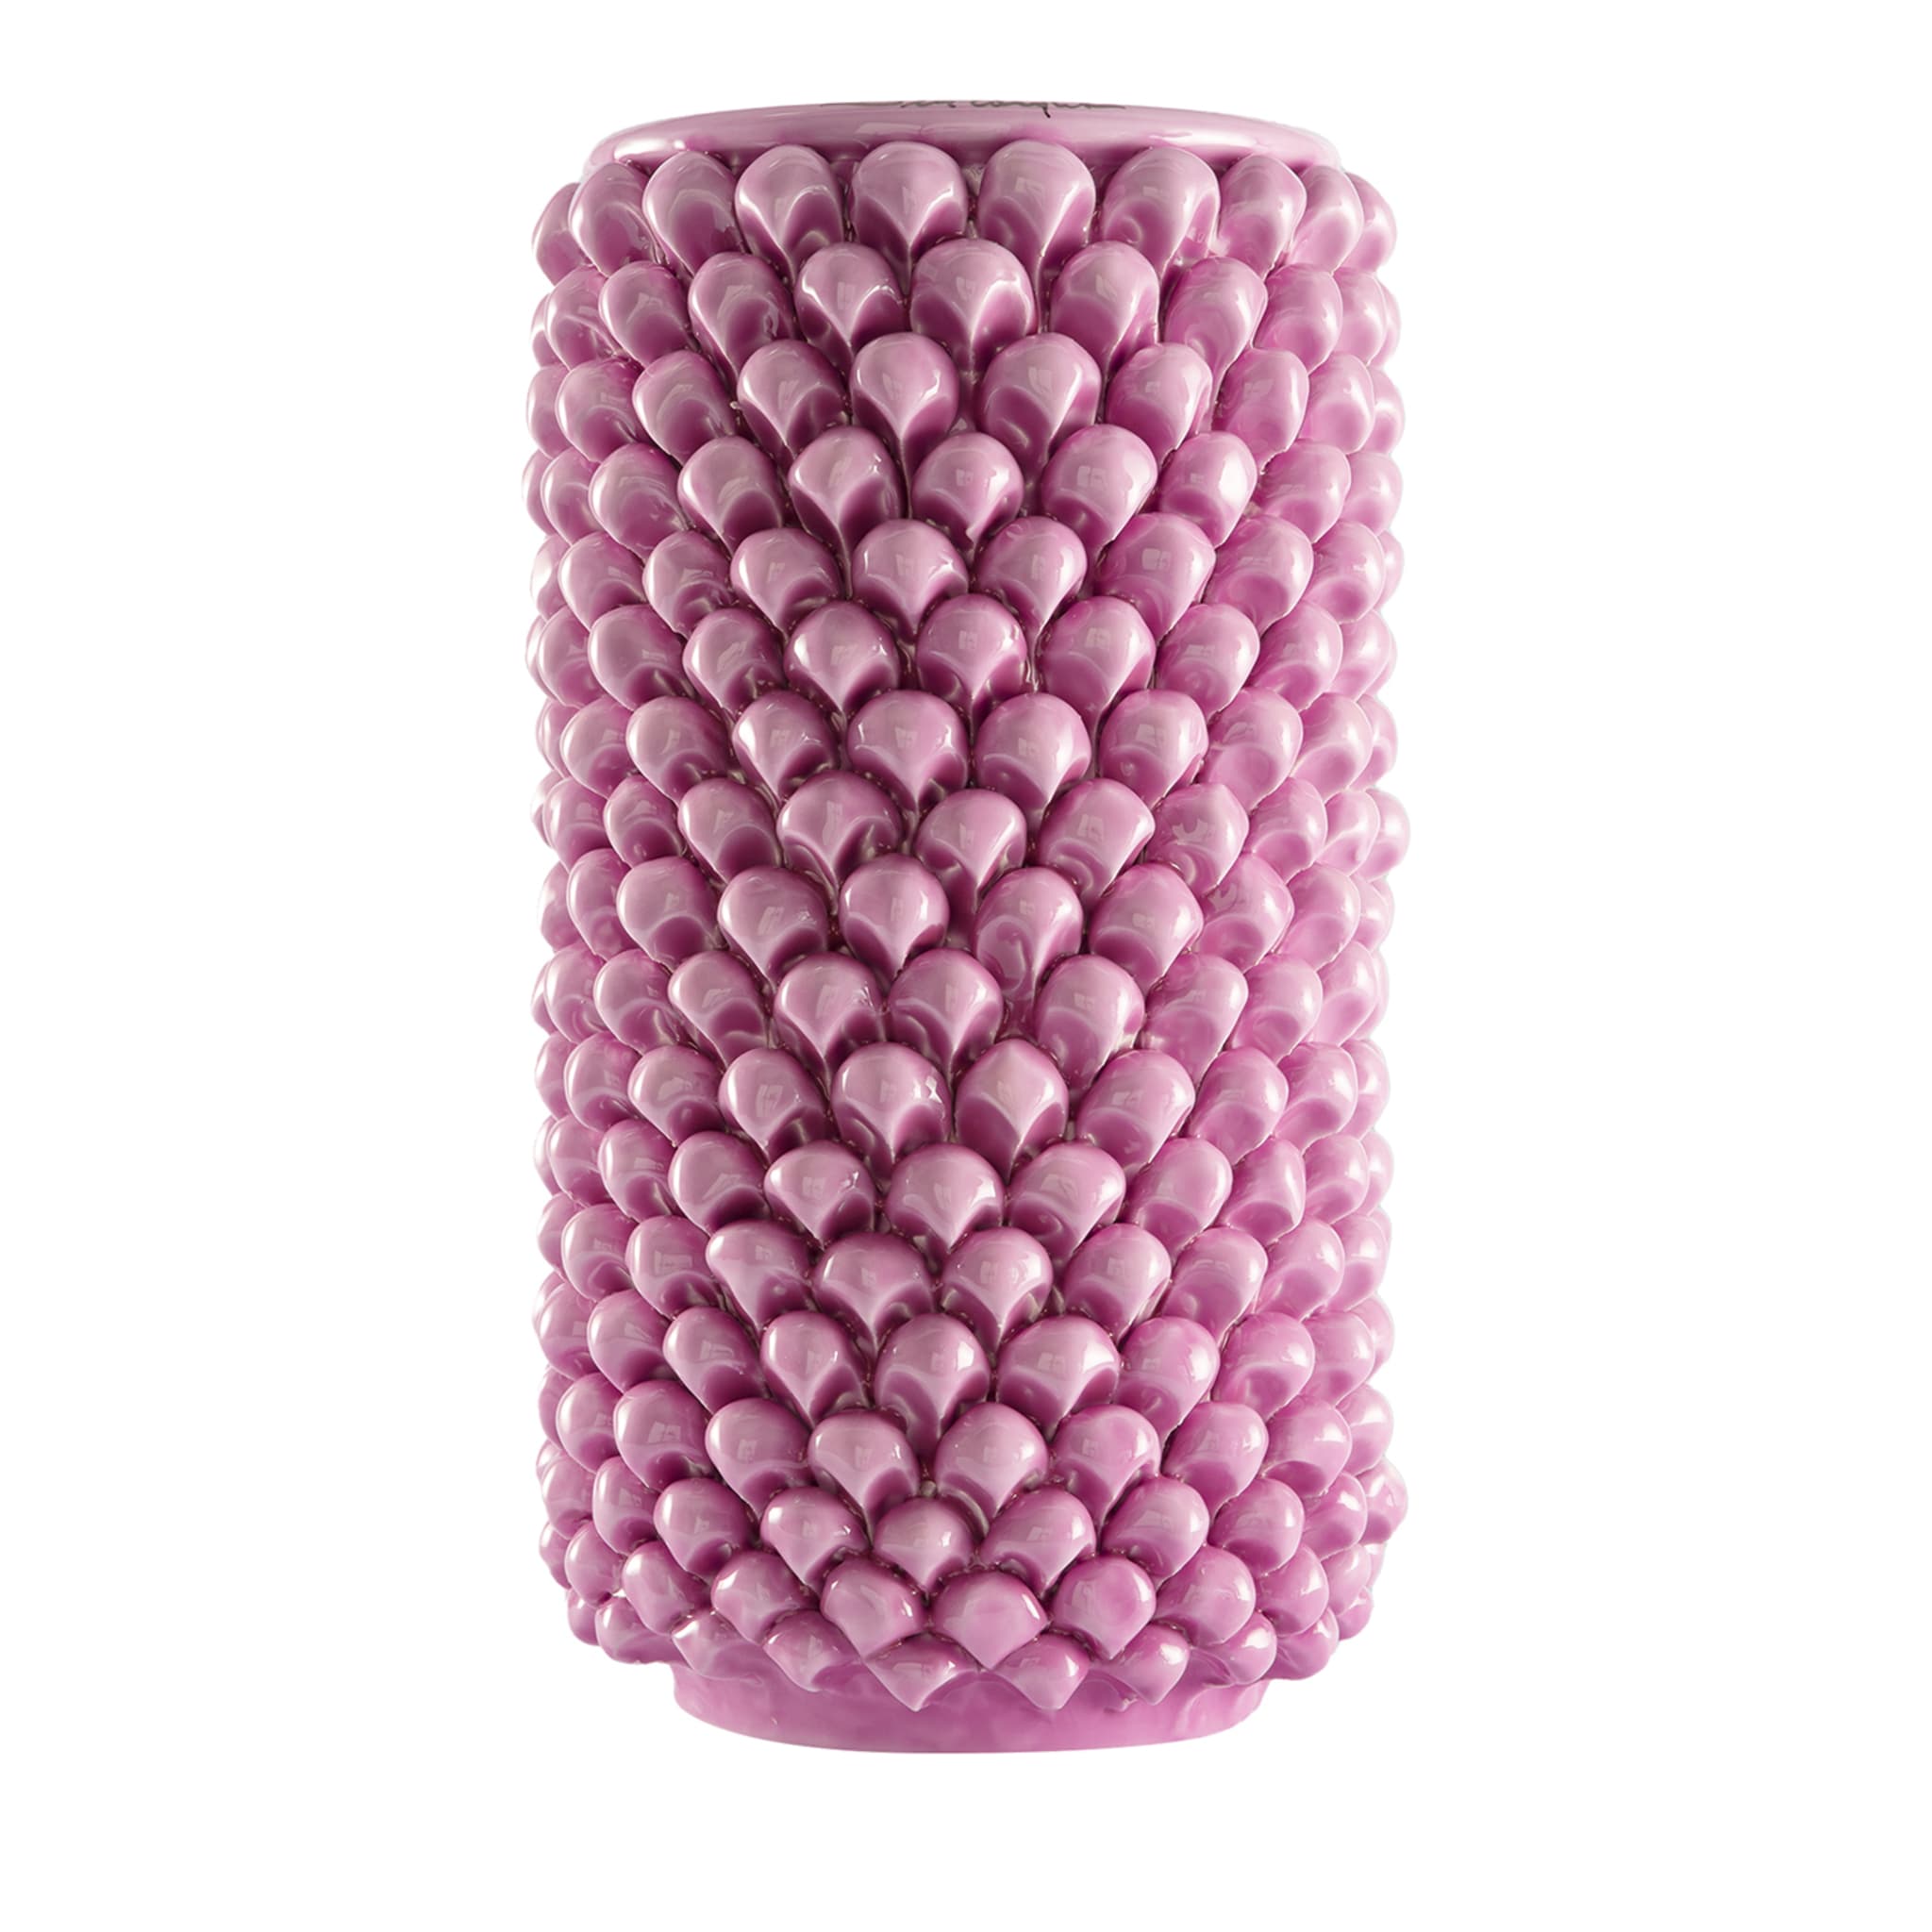 Zylindrische Vase aus rosa Keramik - Hauptansicht